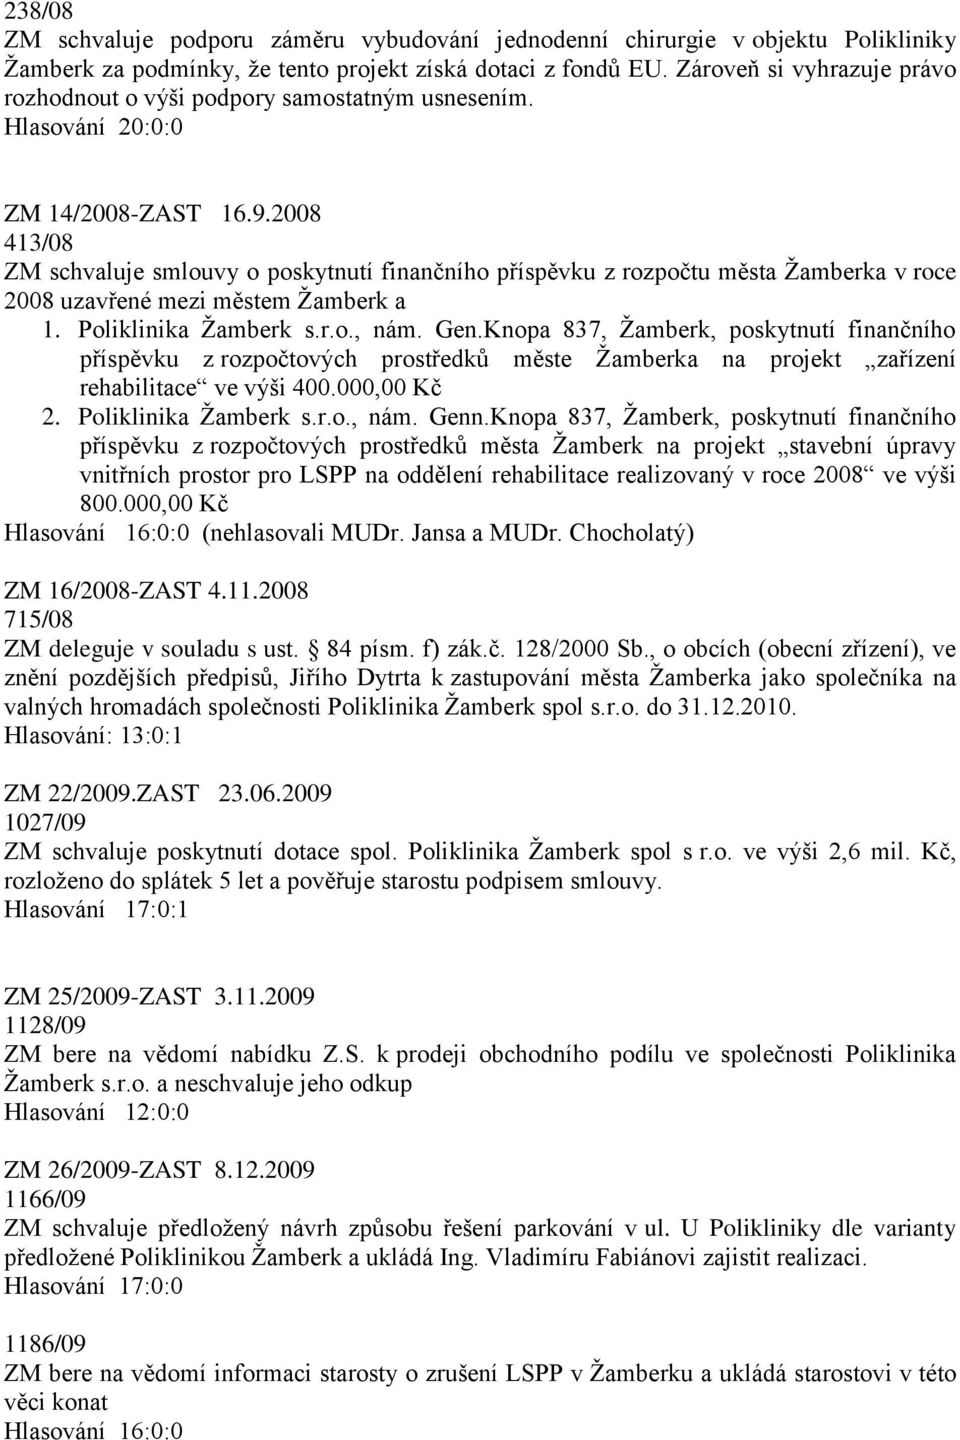 2008 413/08 ZM schvaluje smlouvy o poskytnutí finančního příspěvku z rozpočtu města Žamberka v roce 2008 uzavřené mezi městem Žamberk a 1. Poliklinika Žamberk s.r.o., nám. Gen.